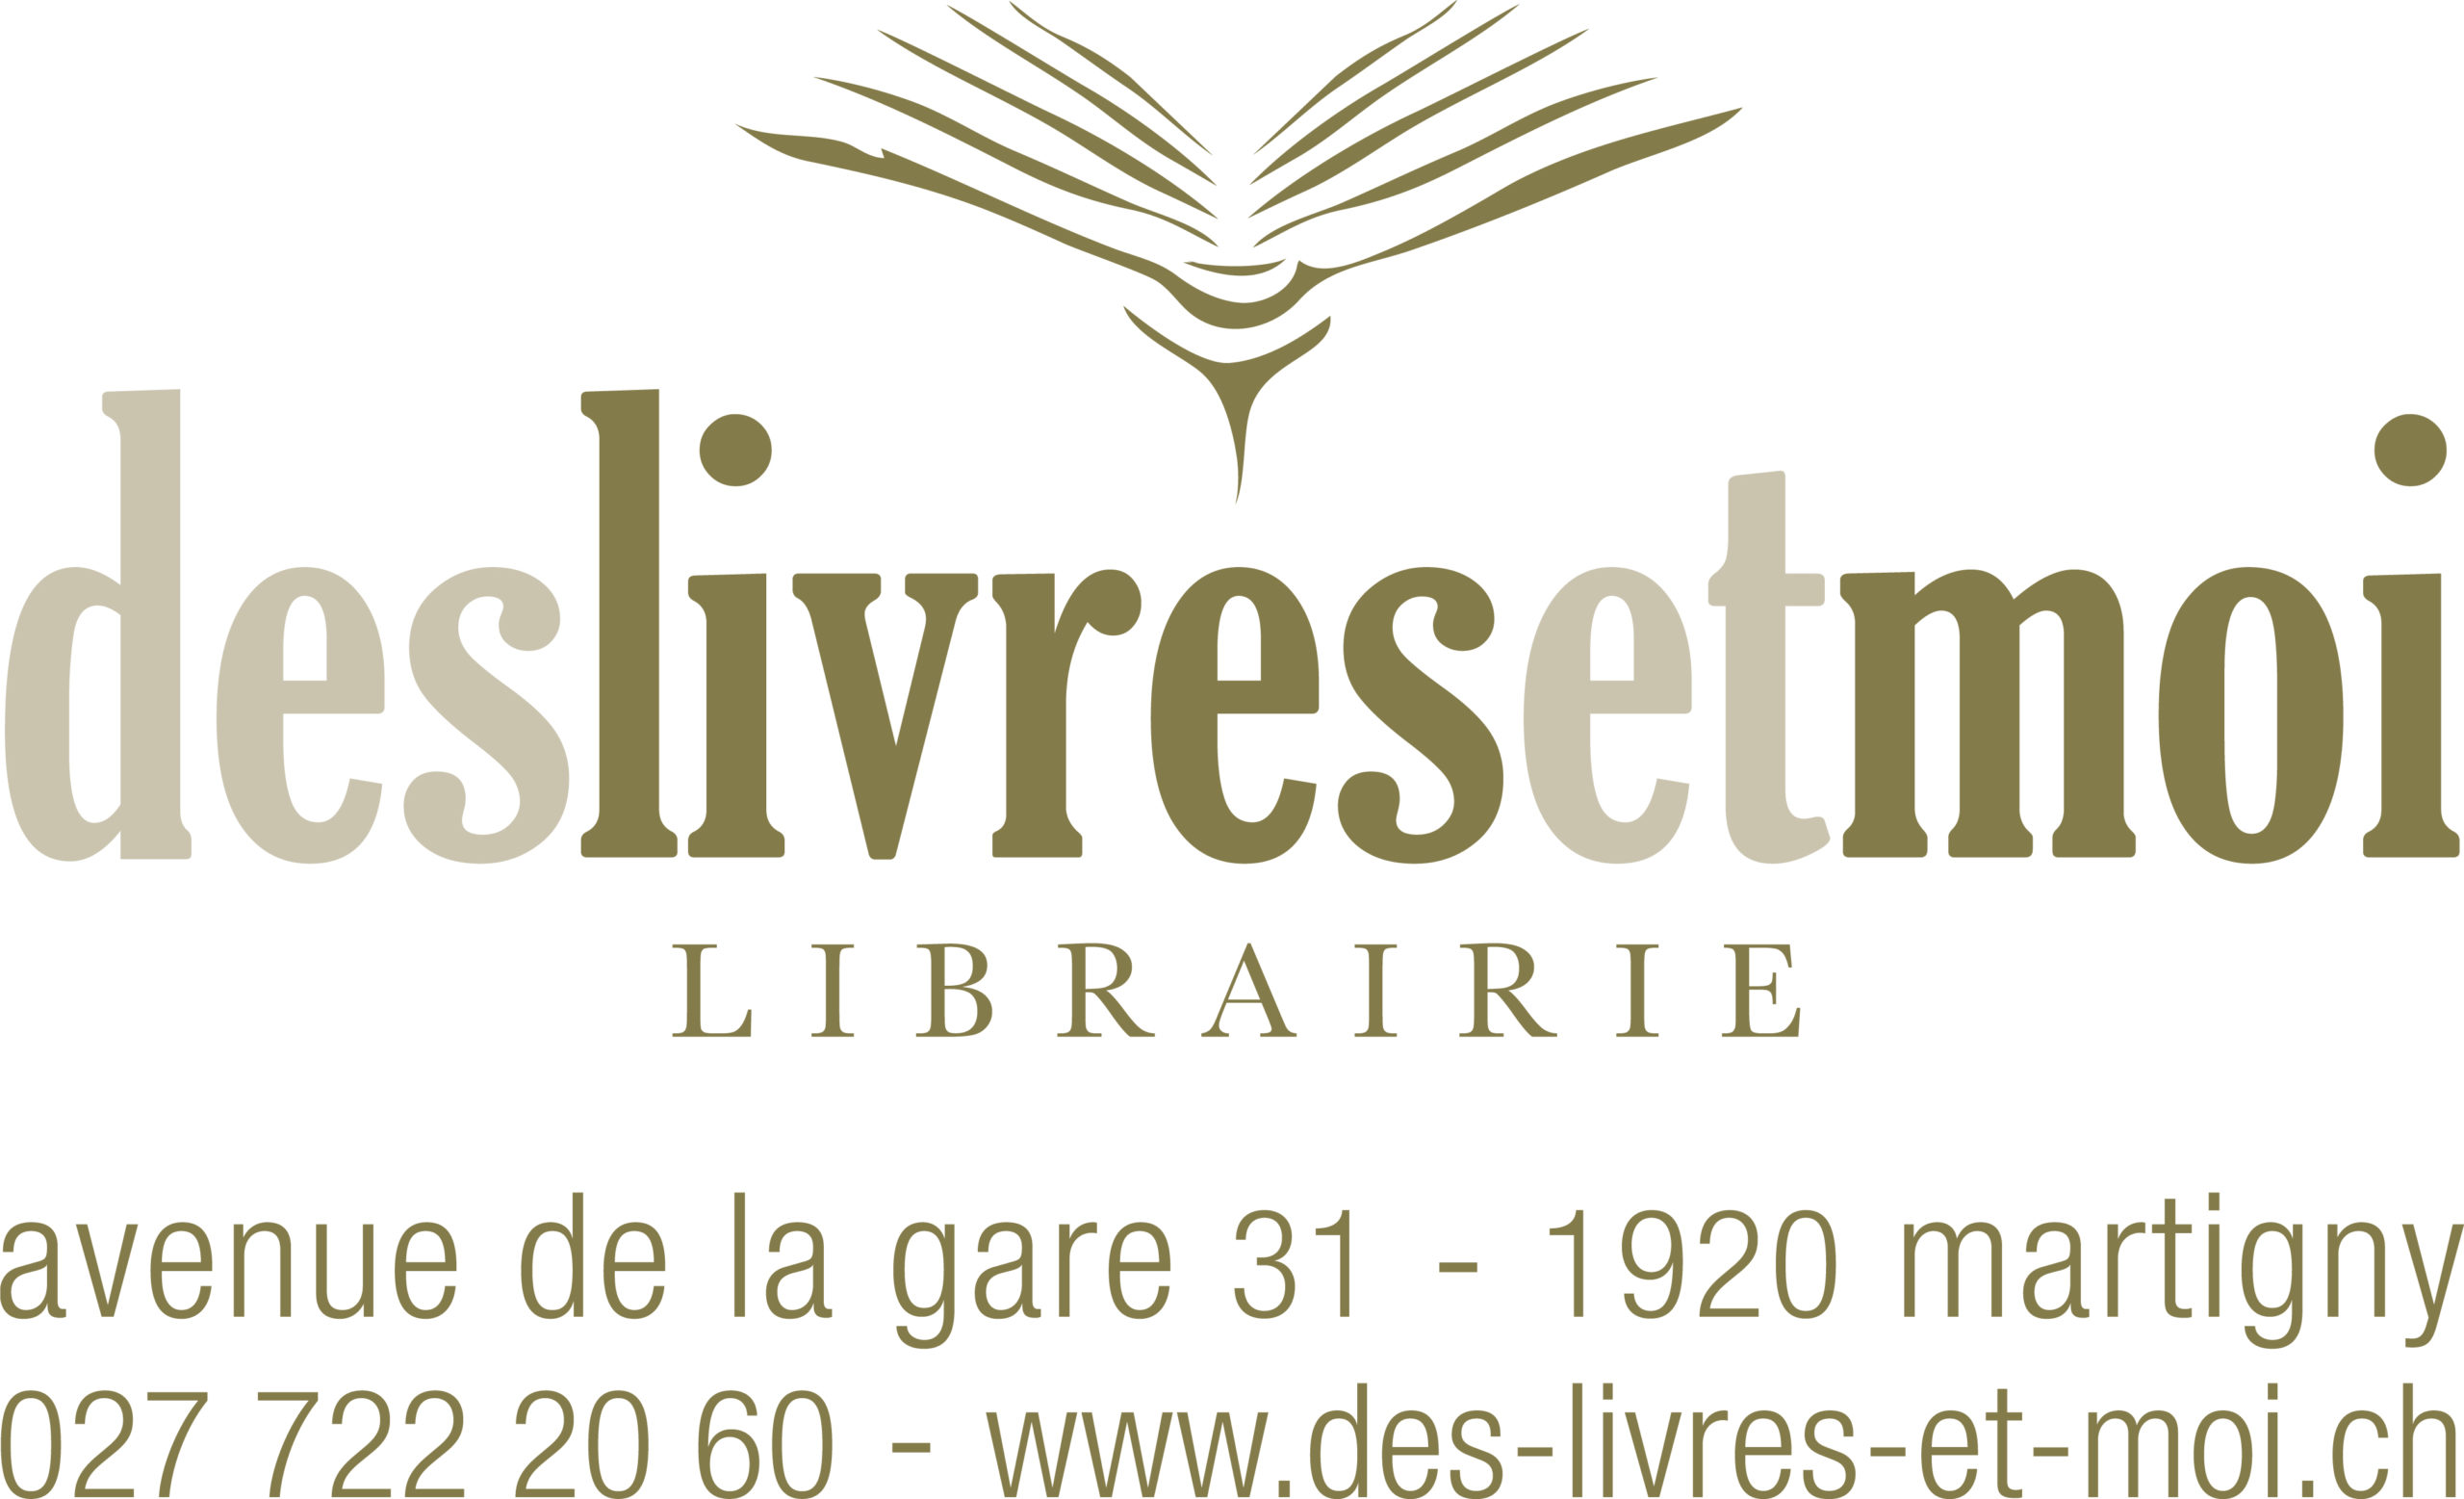 Librairie Des Livres et Moi